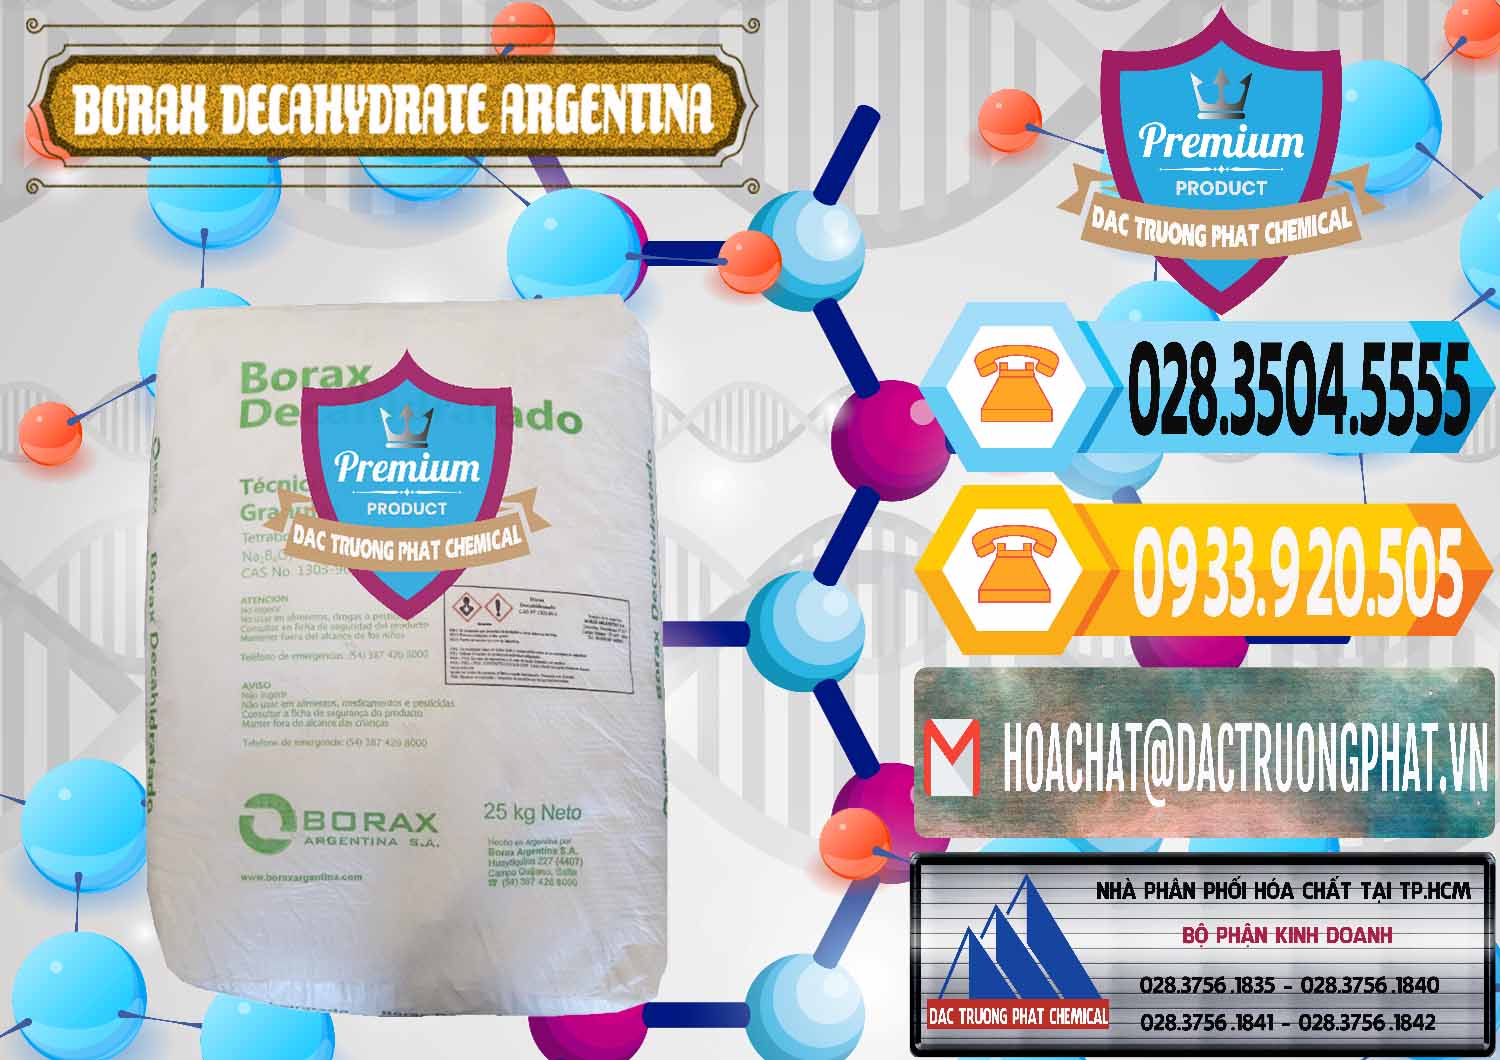 Công ty chuyên bán và cung ứng Borax Decahydrate Argentina - 0446 - Công ty phân phối ( bán ) hóa chất tại TP.HCM - hoachattayrua.net